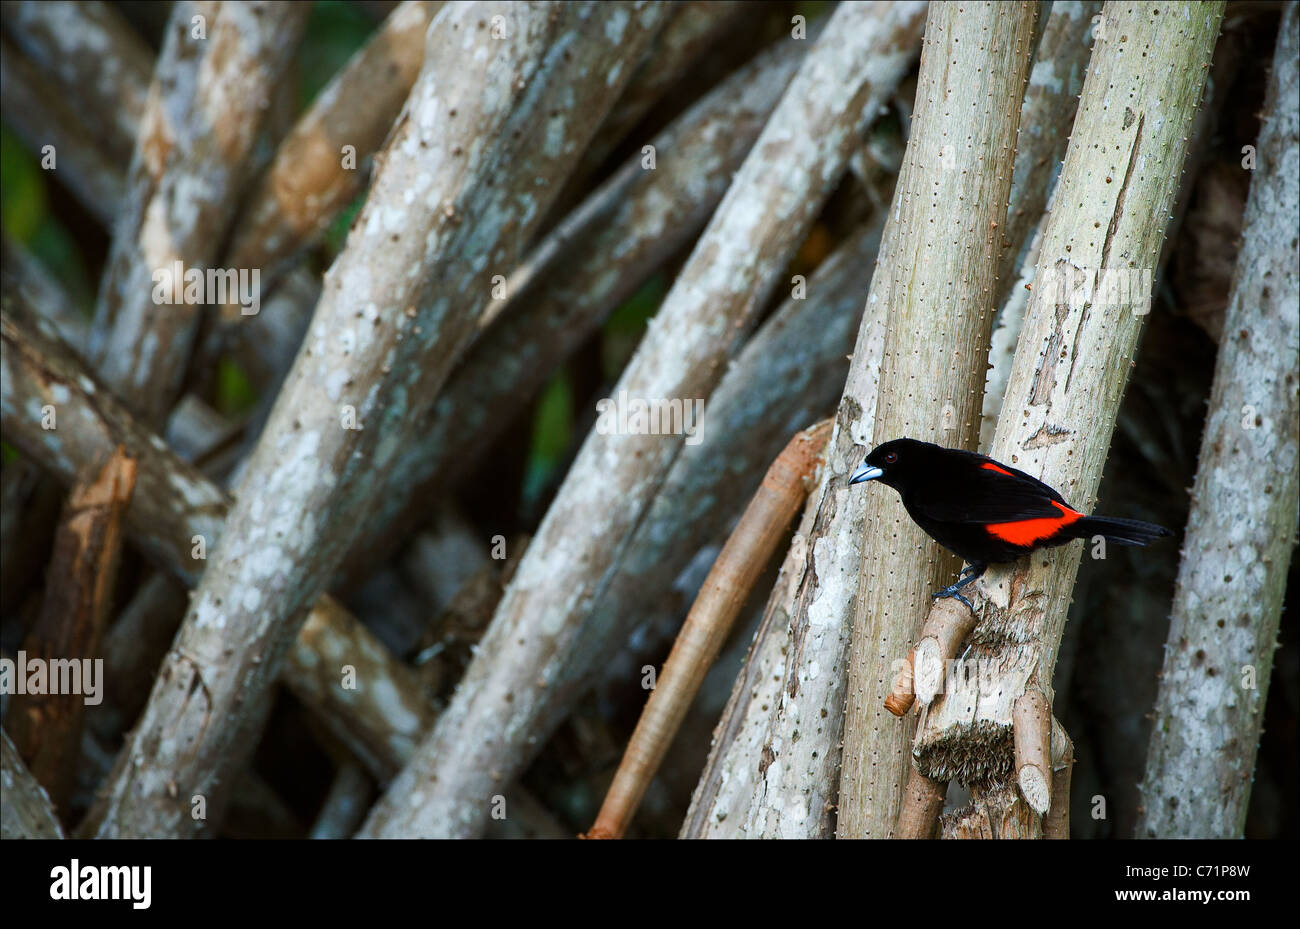 Bird, en las raíces de los árboles de palma. El pájaro negro de alas rojas se asienta en las raíces de los árboles de palma. Foto de stock